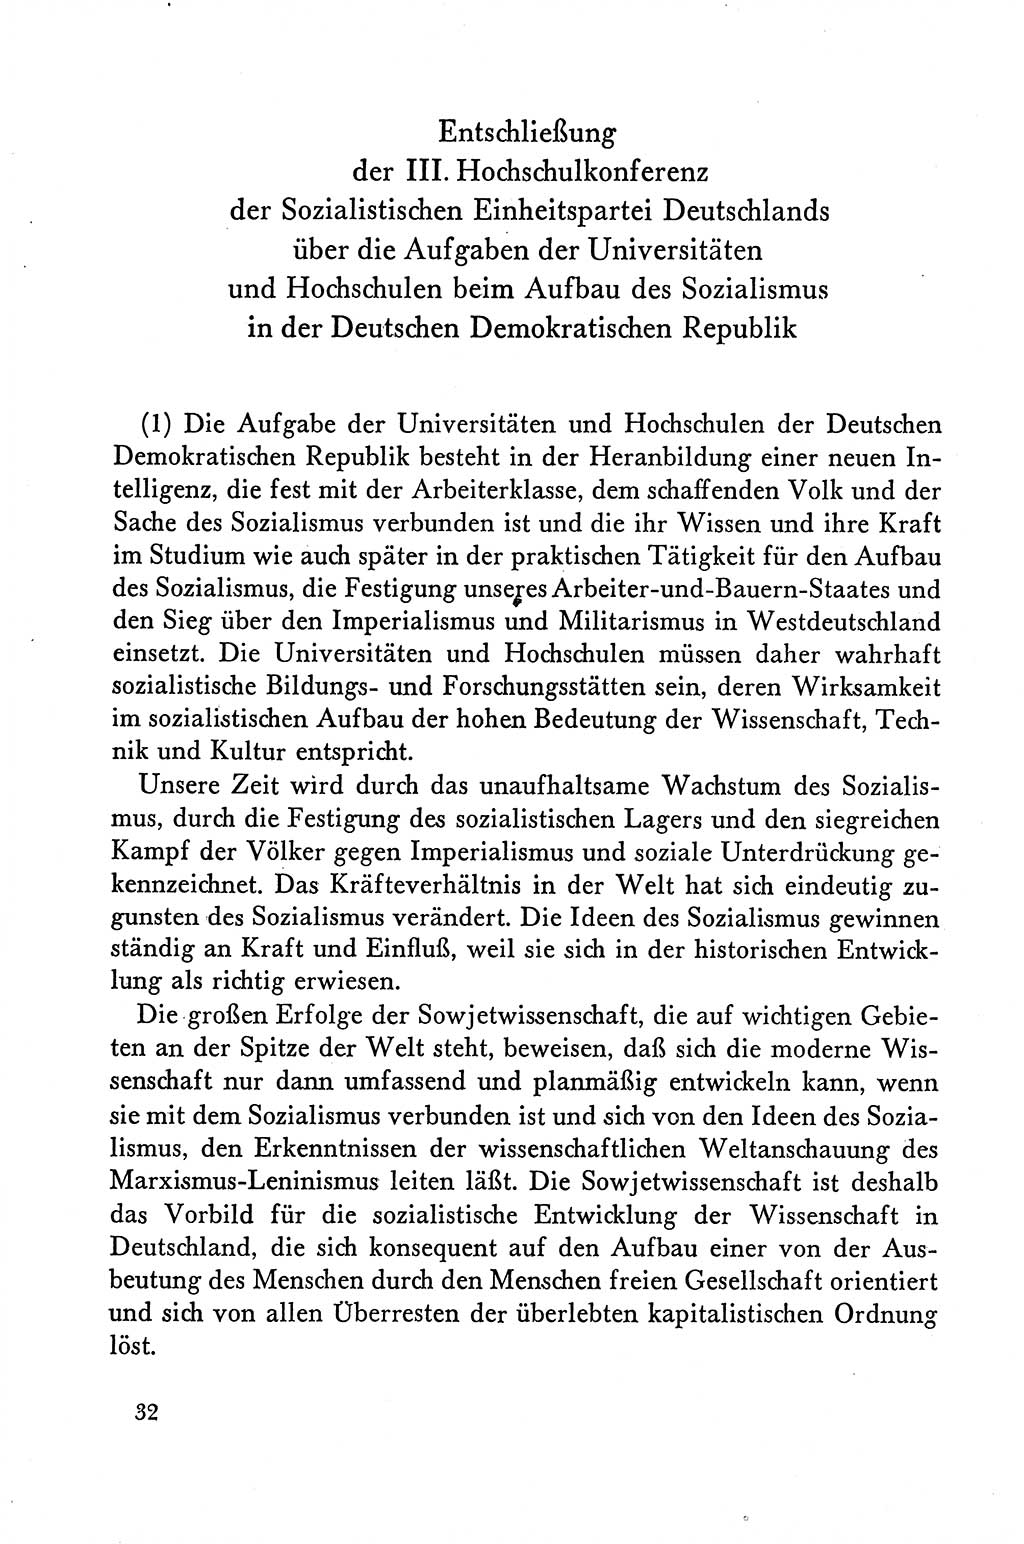 Dokumente der Sozialistischen Einheitspartei Deutschlands (SED) [Deutsche Demokratische Republik (DDR)] 1958-1959, Seite 32 (Dok. SED DDR 1958-1959, S. 32)